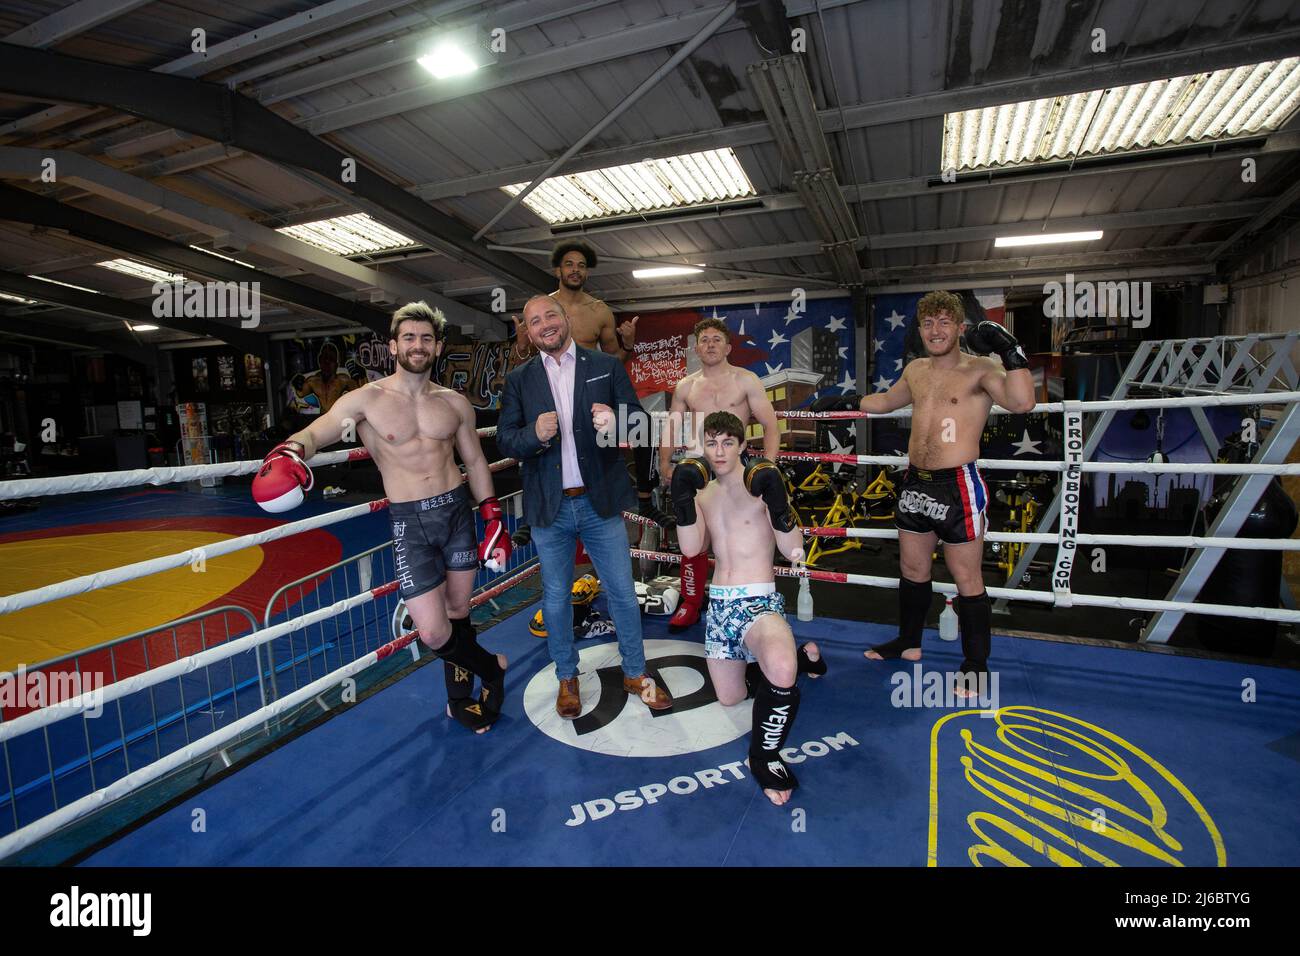 Geschäftsmann Chris Walsh Reform UK-Kandidat und örtlicher Gym-Besitzer von Trident Fitness posiert mit Studenten beim Boxtraining, West Yorkshire, England. Stockfoto